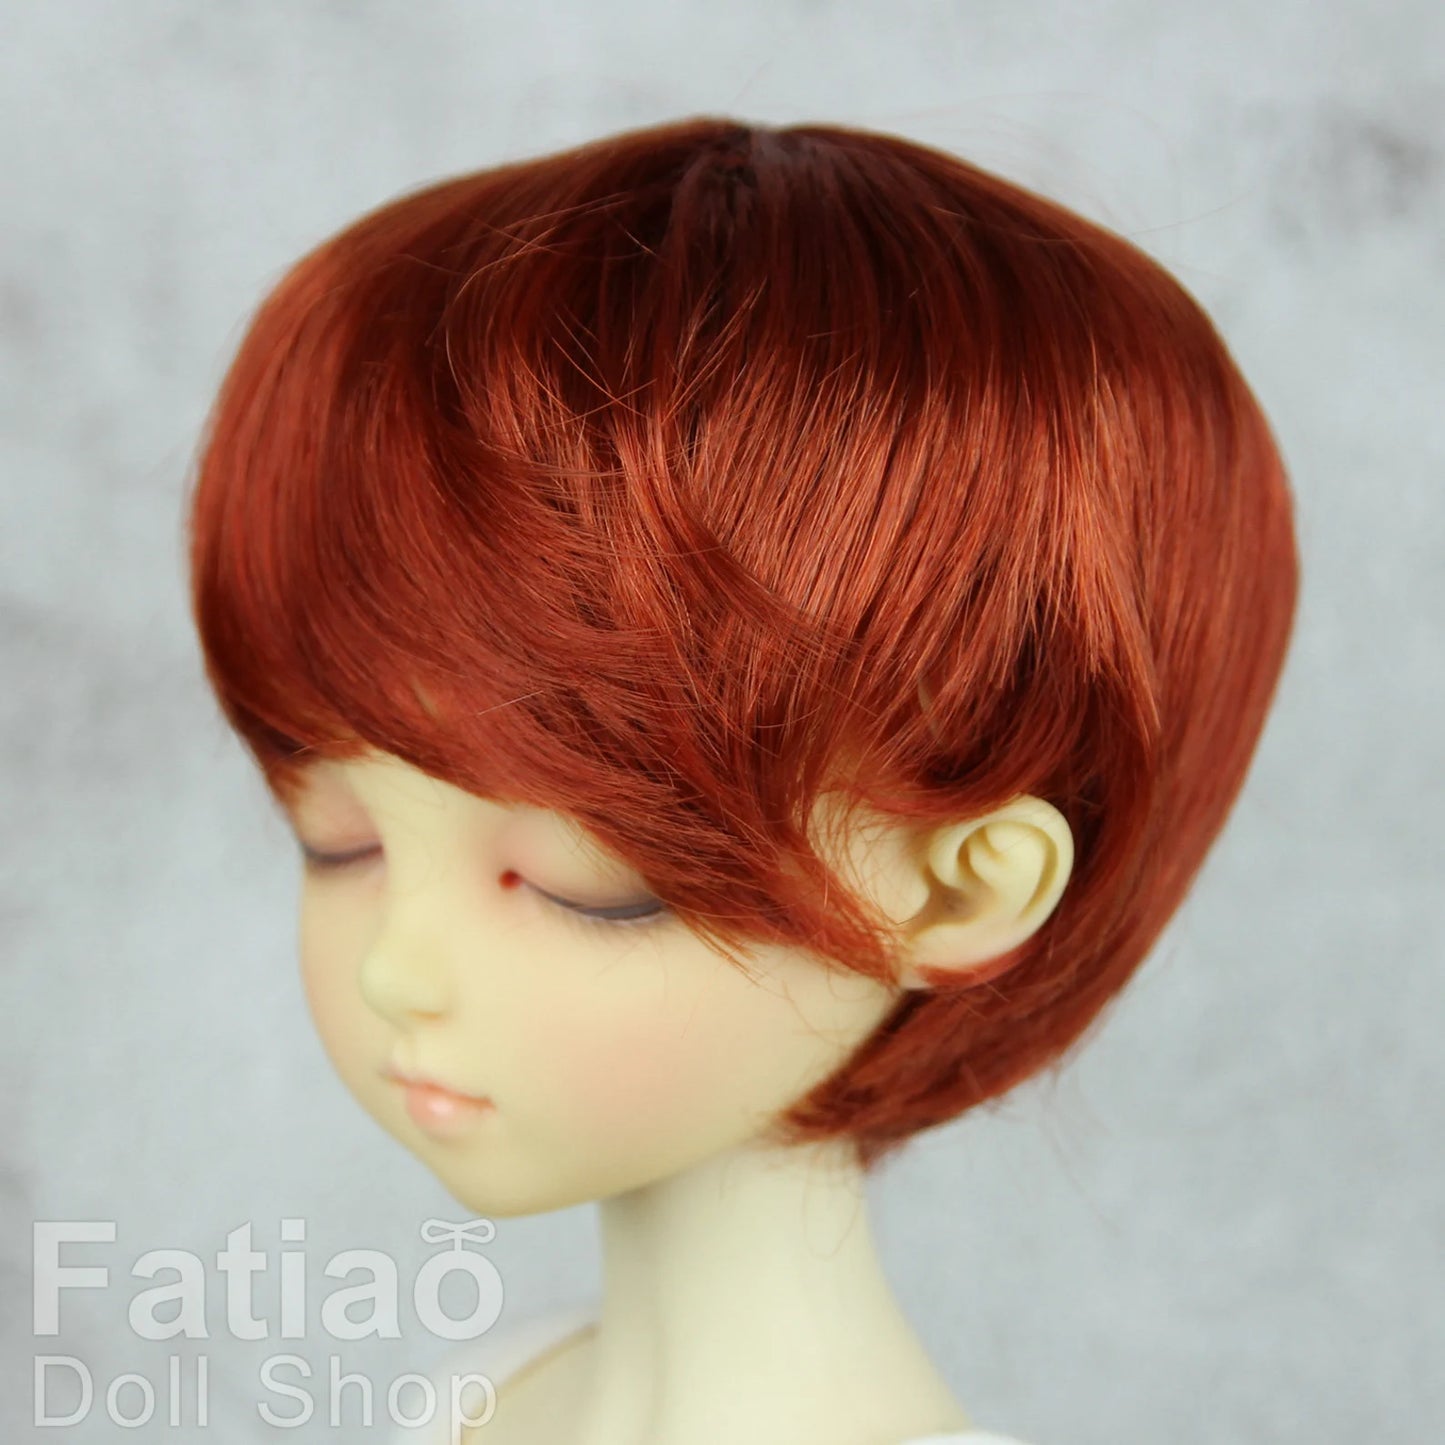 【Fatiao Doll Shop】FWF-053 娃用假髮 多色 / 7-8吋 BJD 4分 iMda3.0